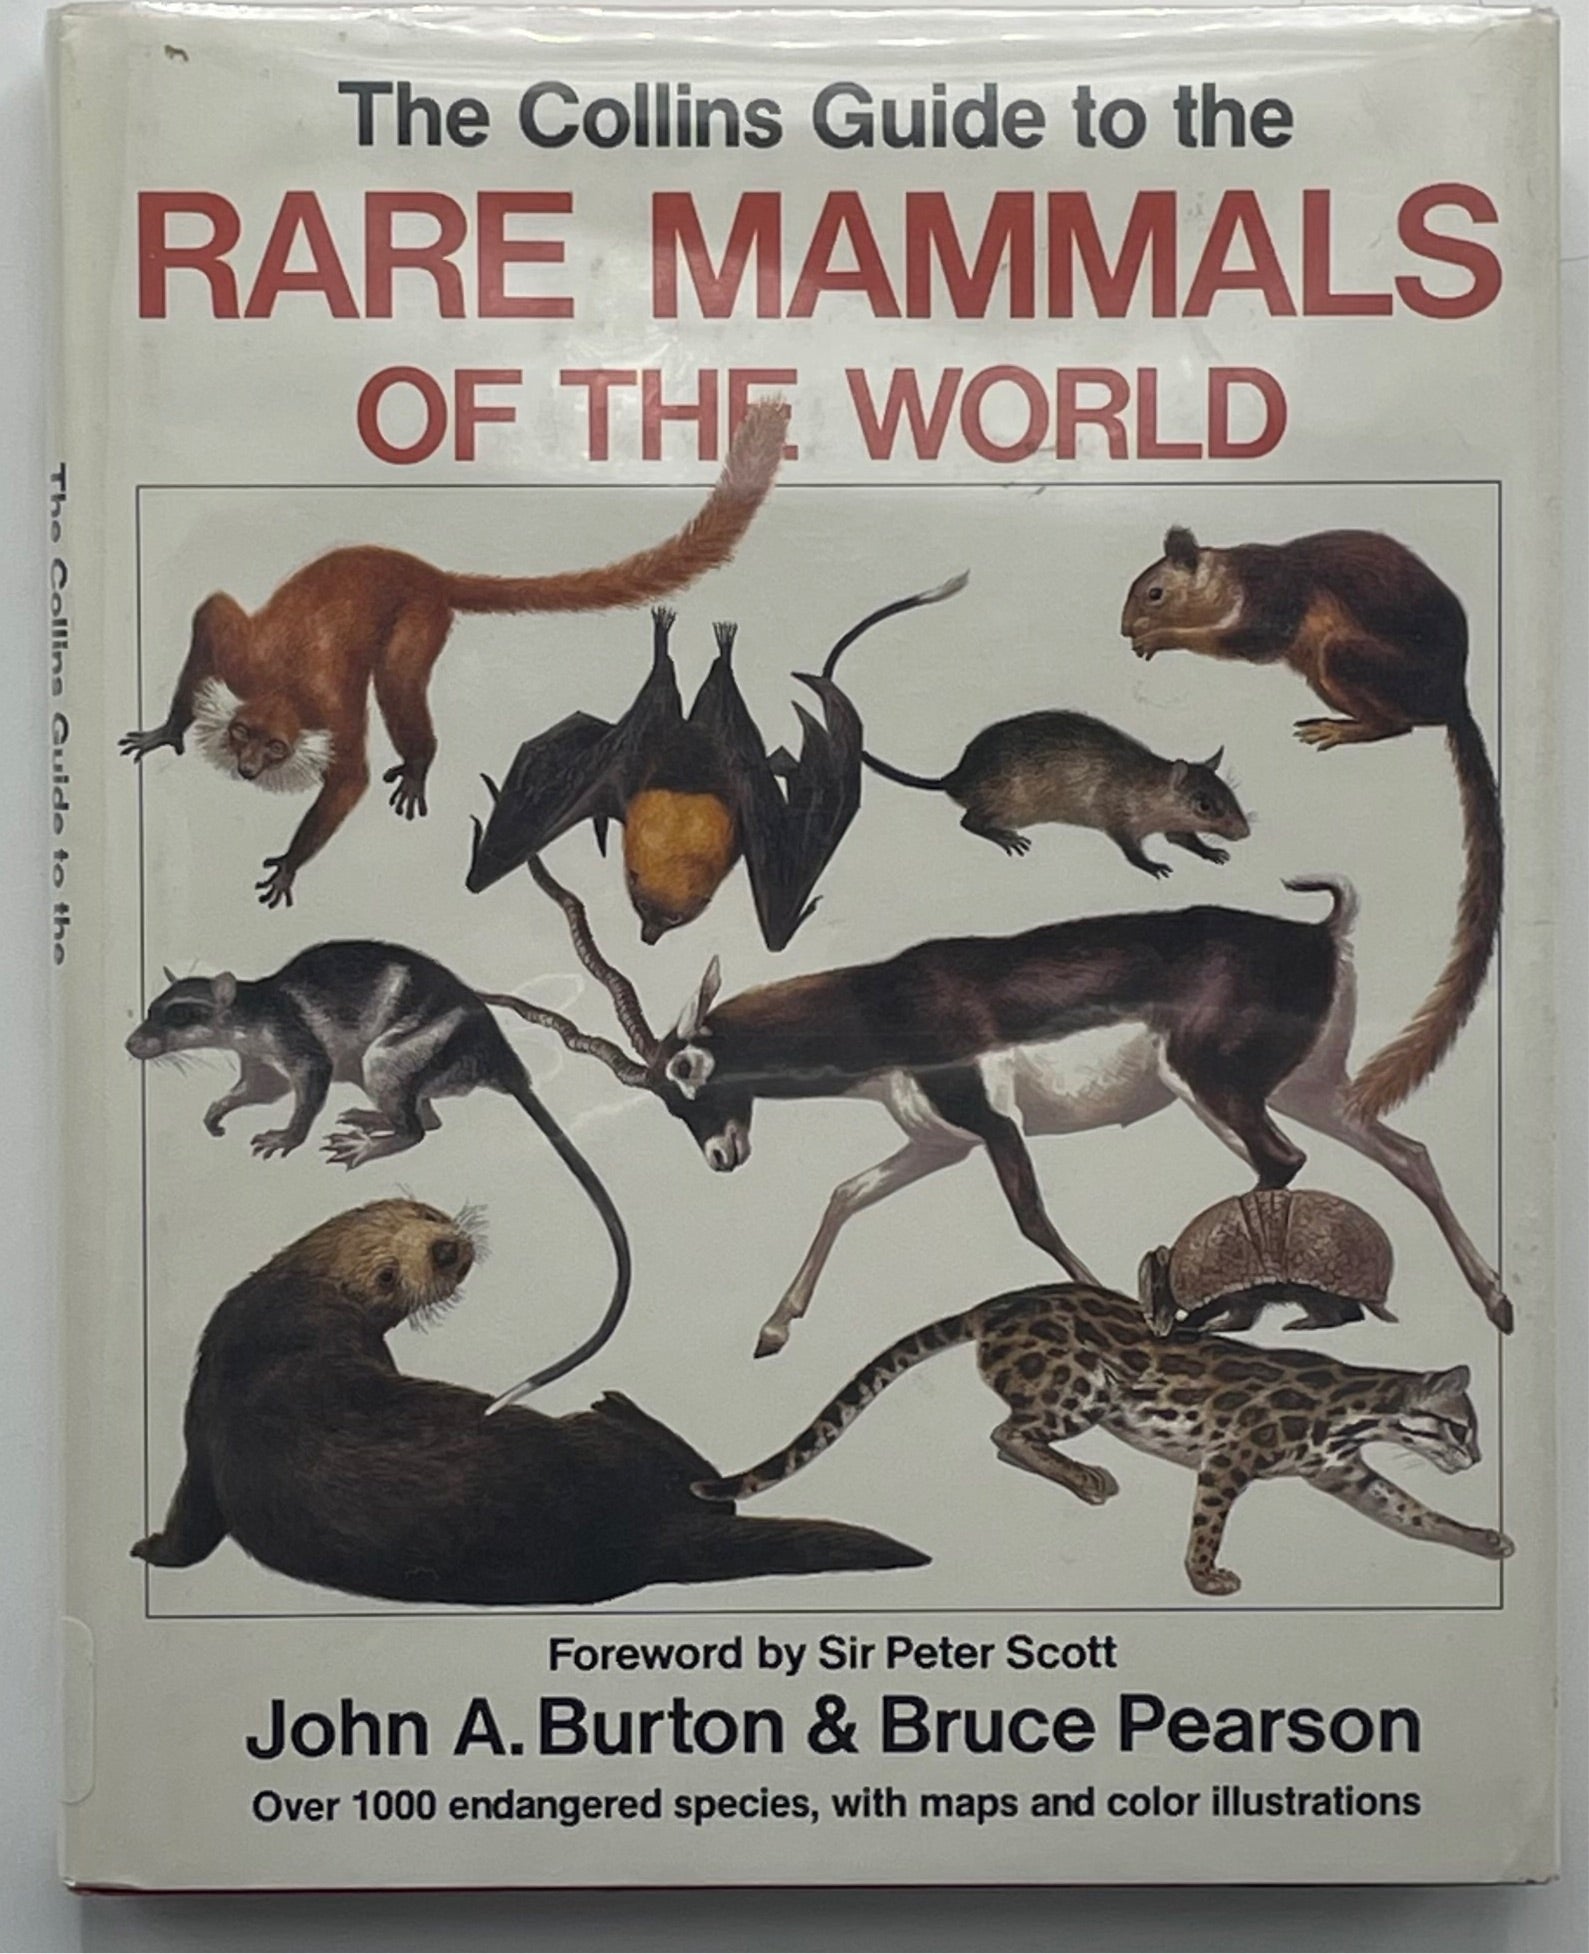 Rare Mammals of the World